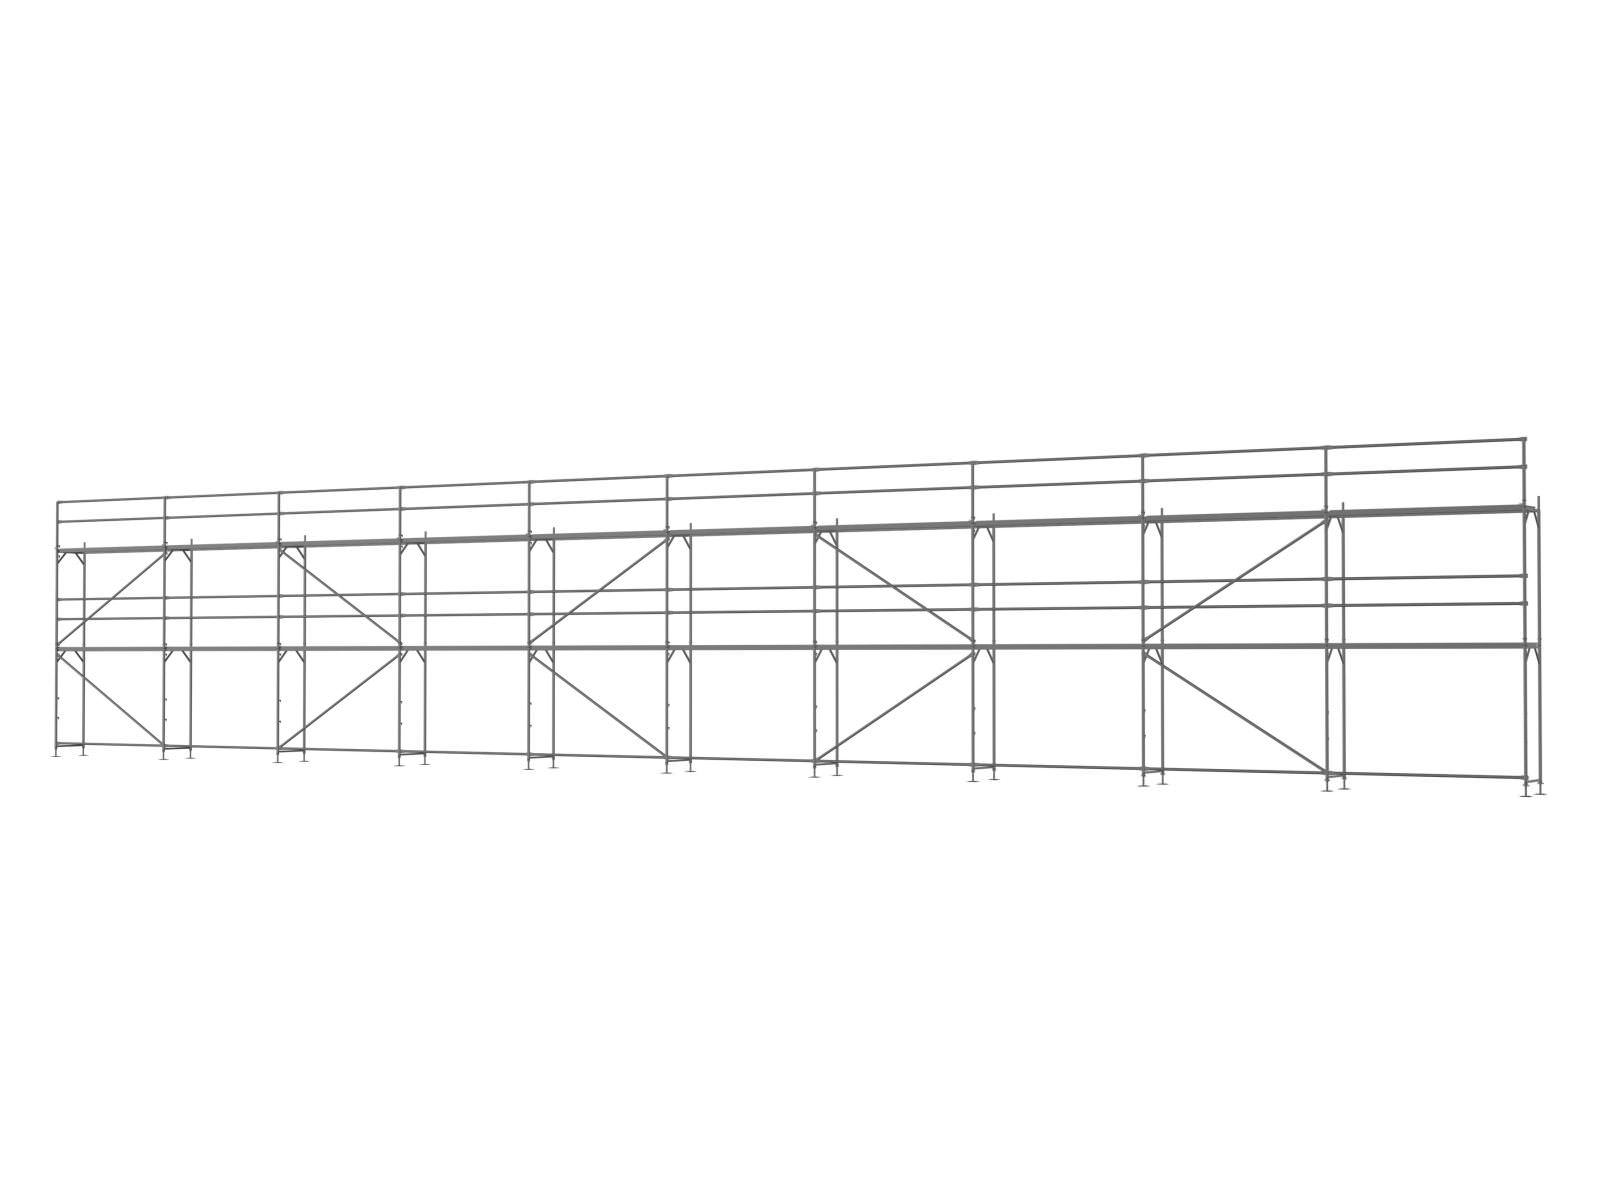 Stahl Traufseitengerüst 180 qm, Feldlänge 3,0 m - Basis-Gerüst